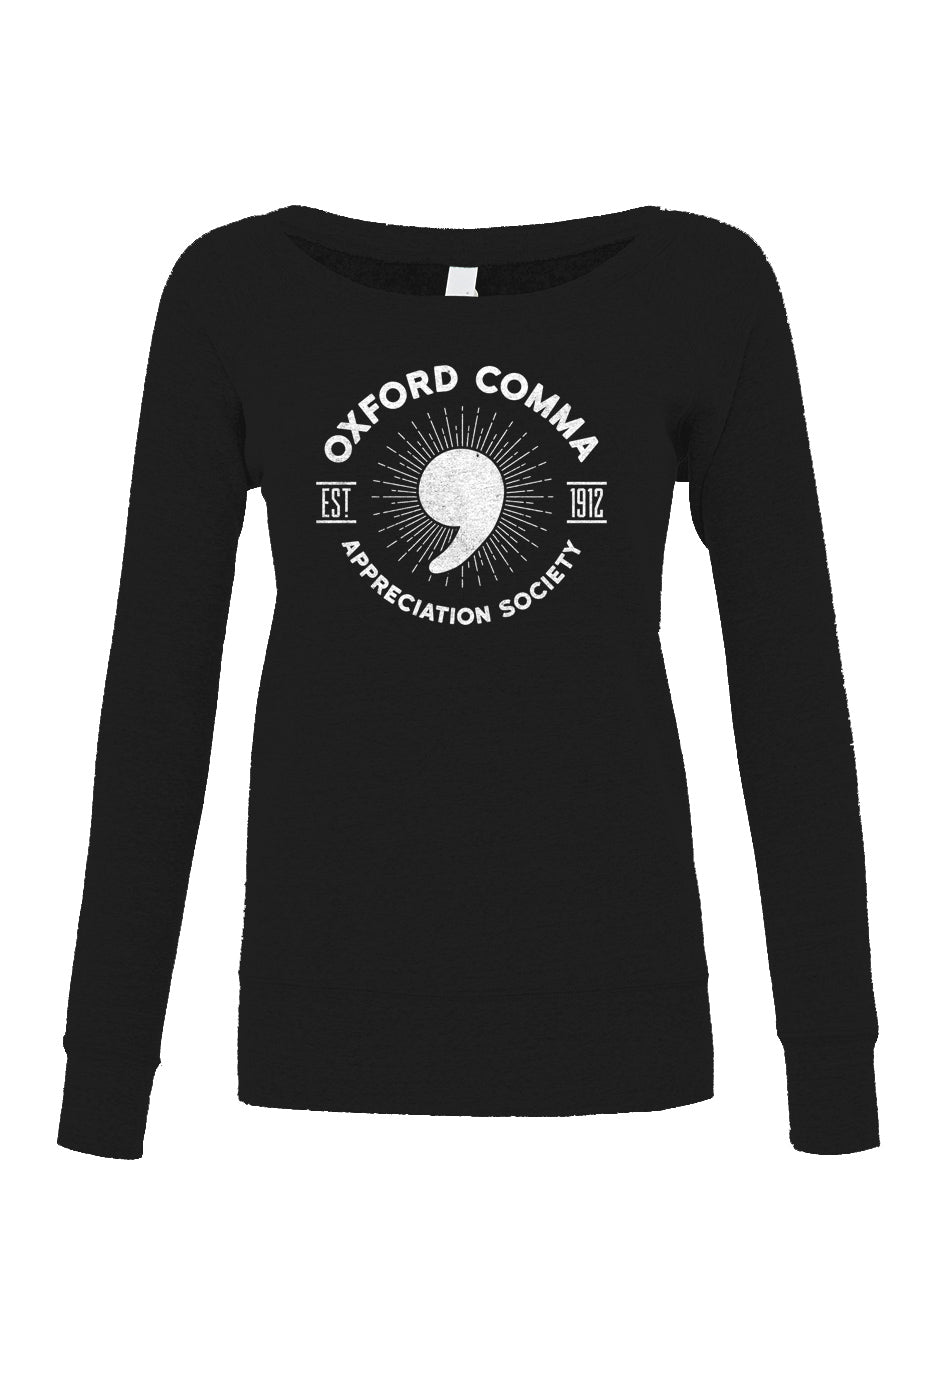 Women's Oxford Comma Appreciation Society Scoop Neck Fleece